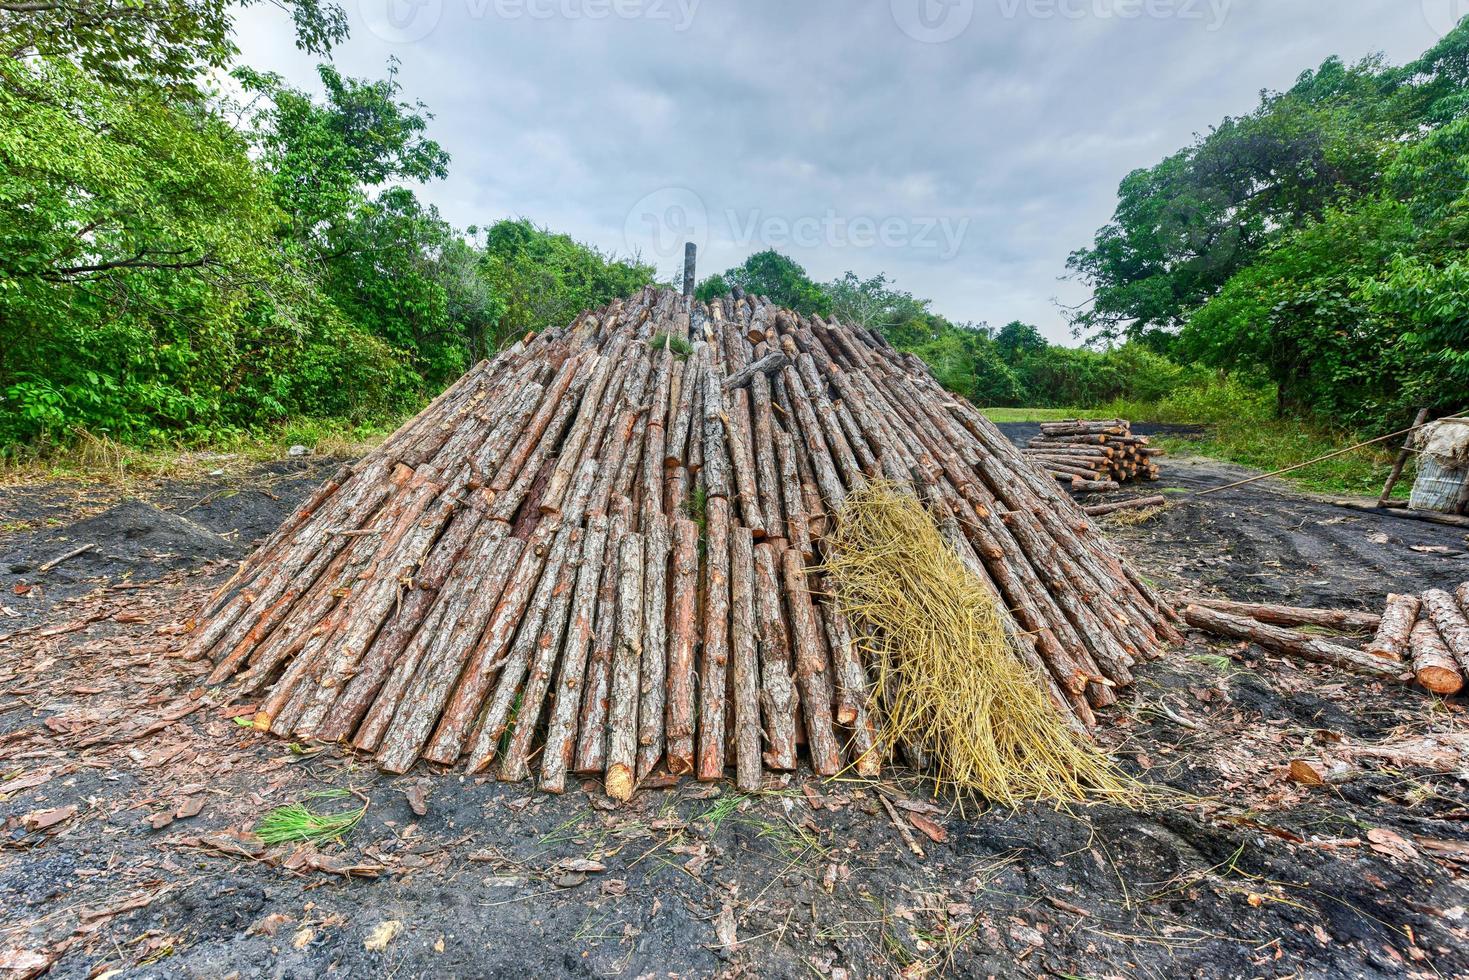 pira de madera en preparación para la creación de carbón vegetal a partir de troncos de pino en viñales, cuba. foto